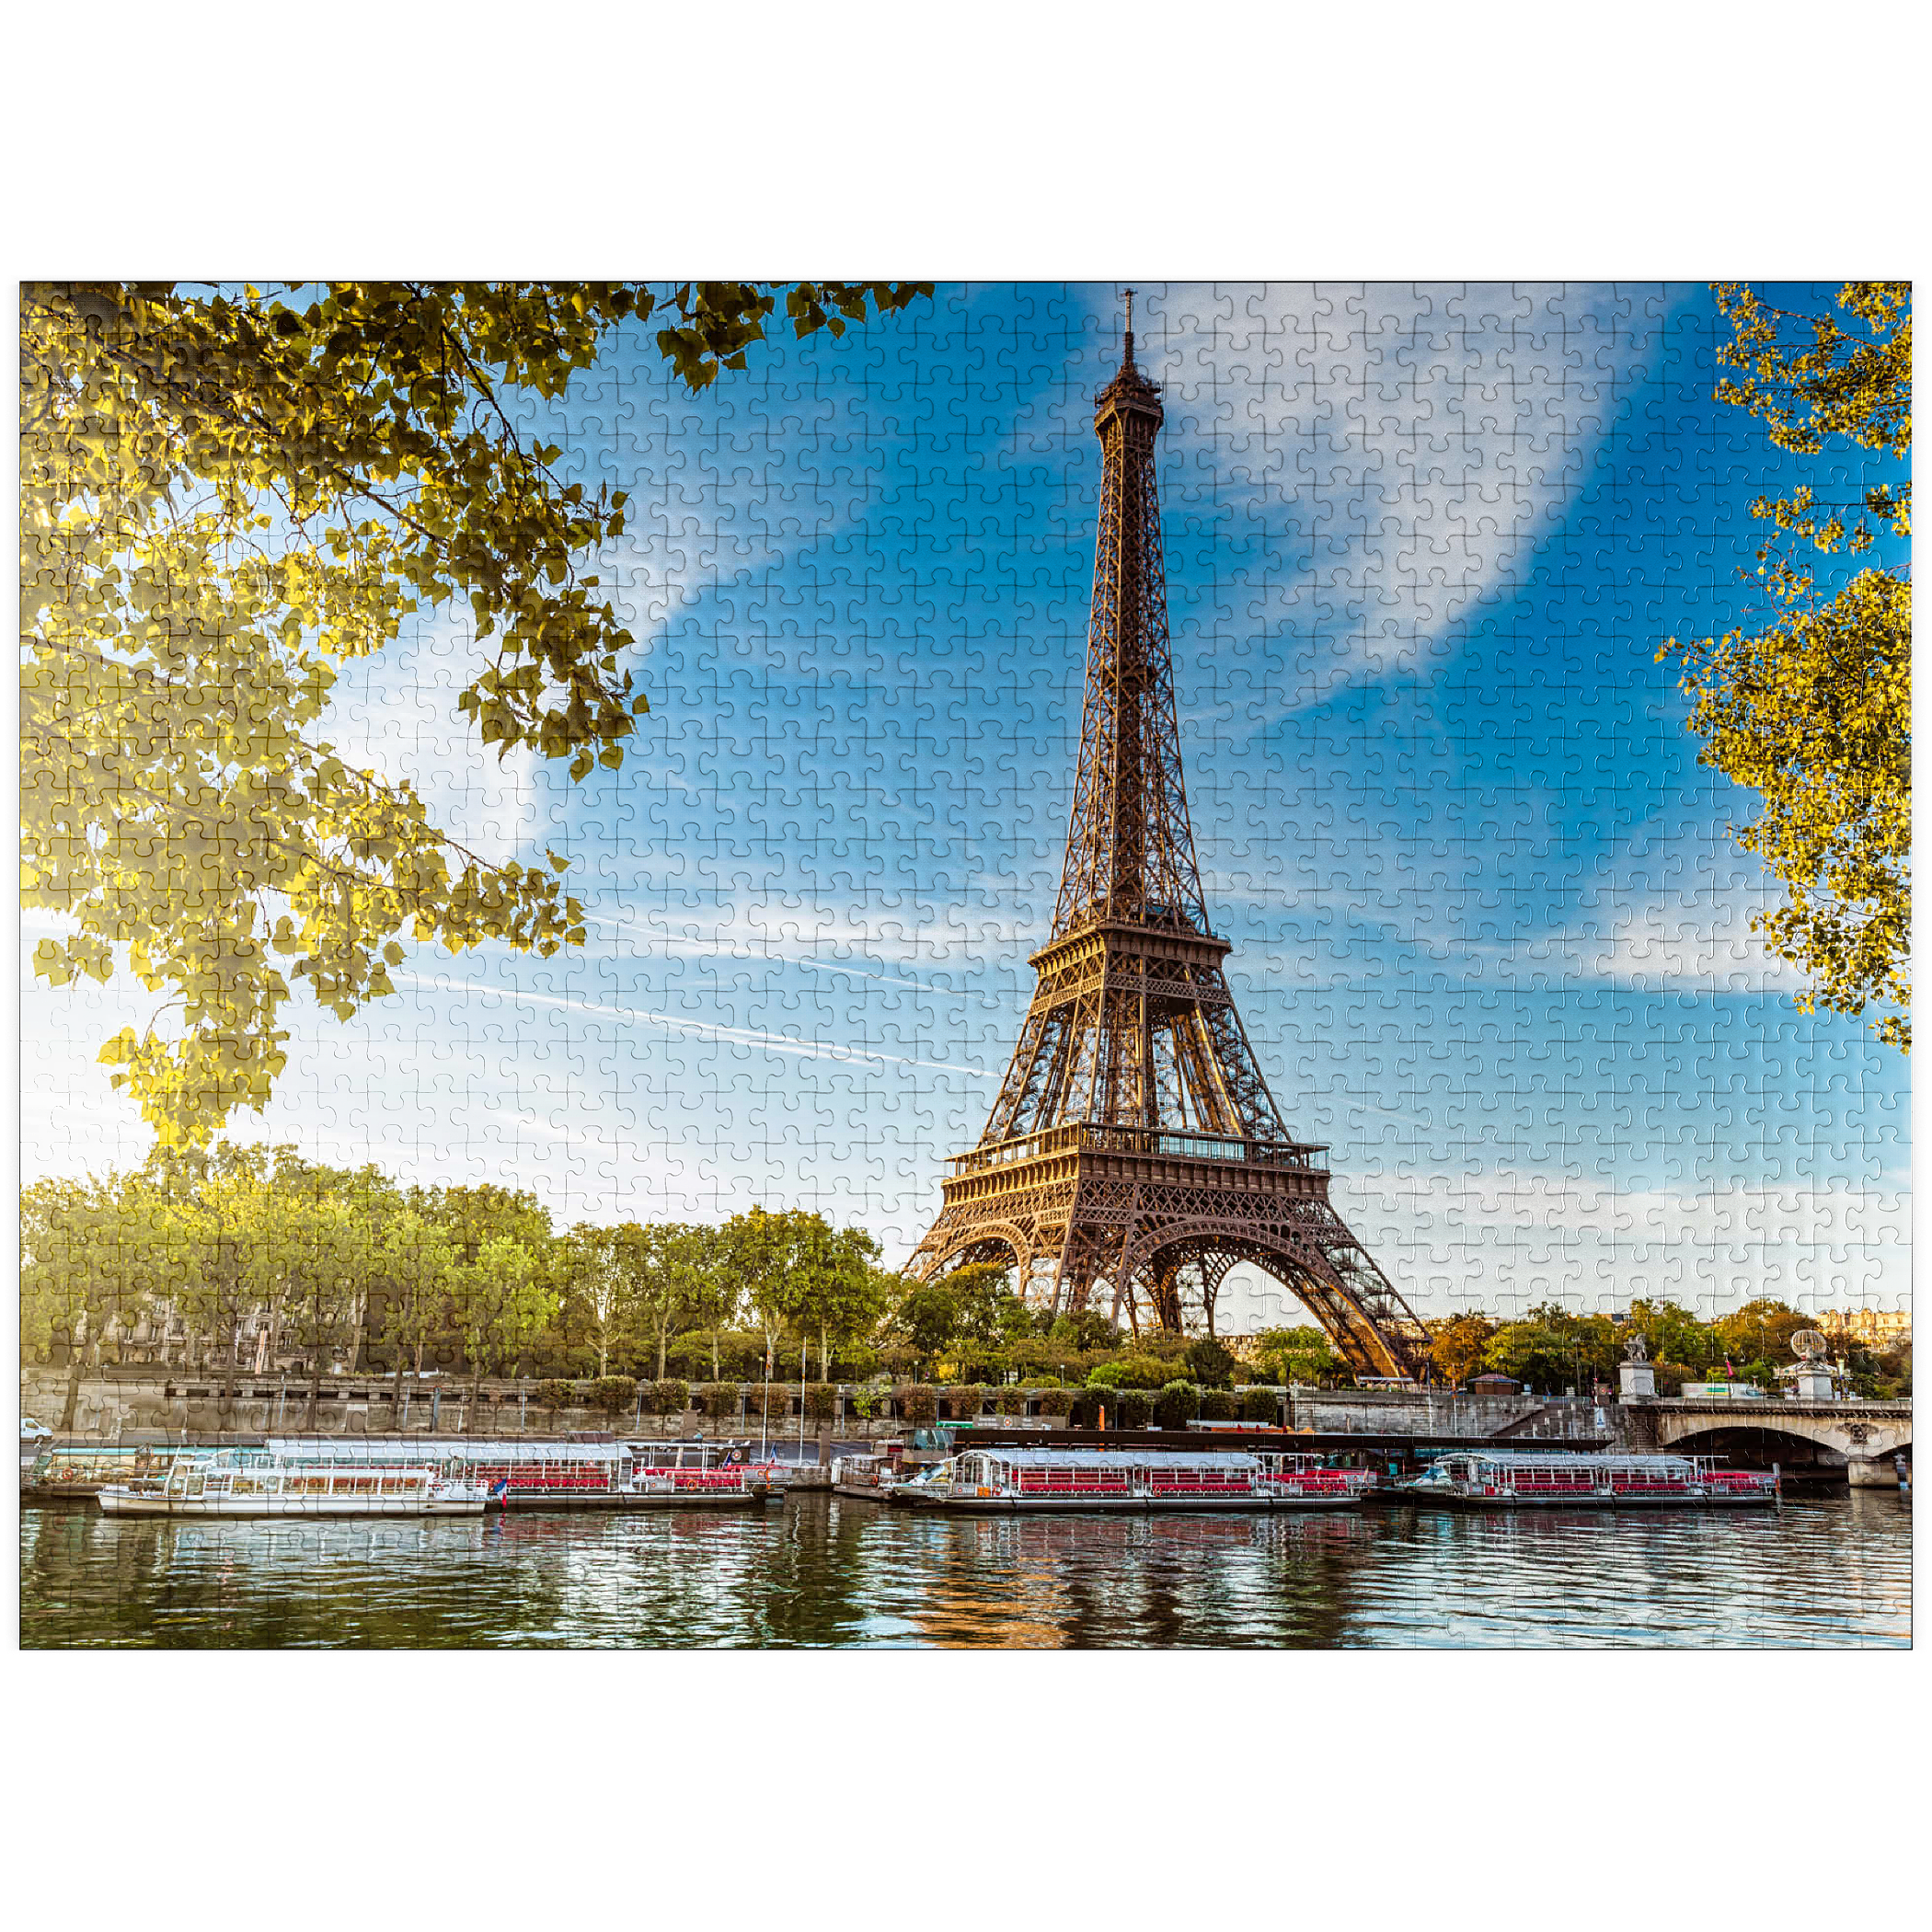 Eiffel Tower Paris France – MyPuzzle.com USA